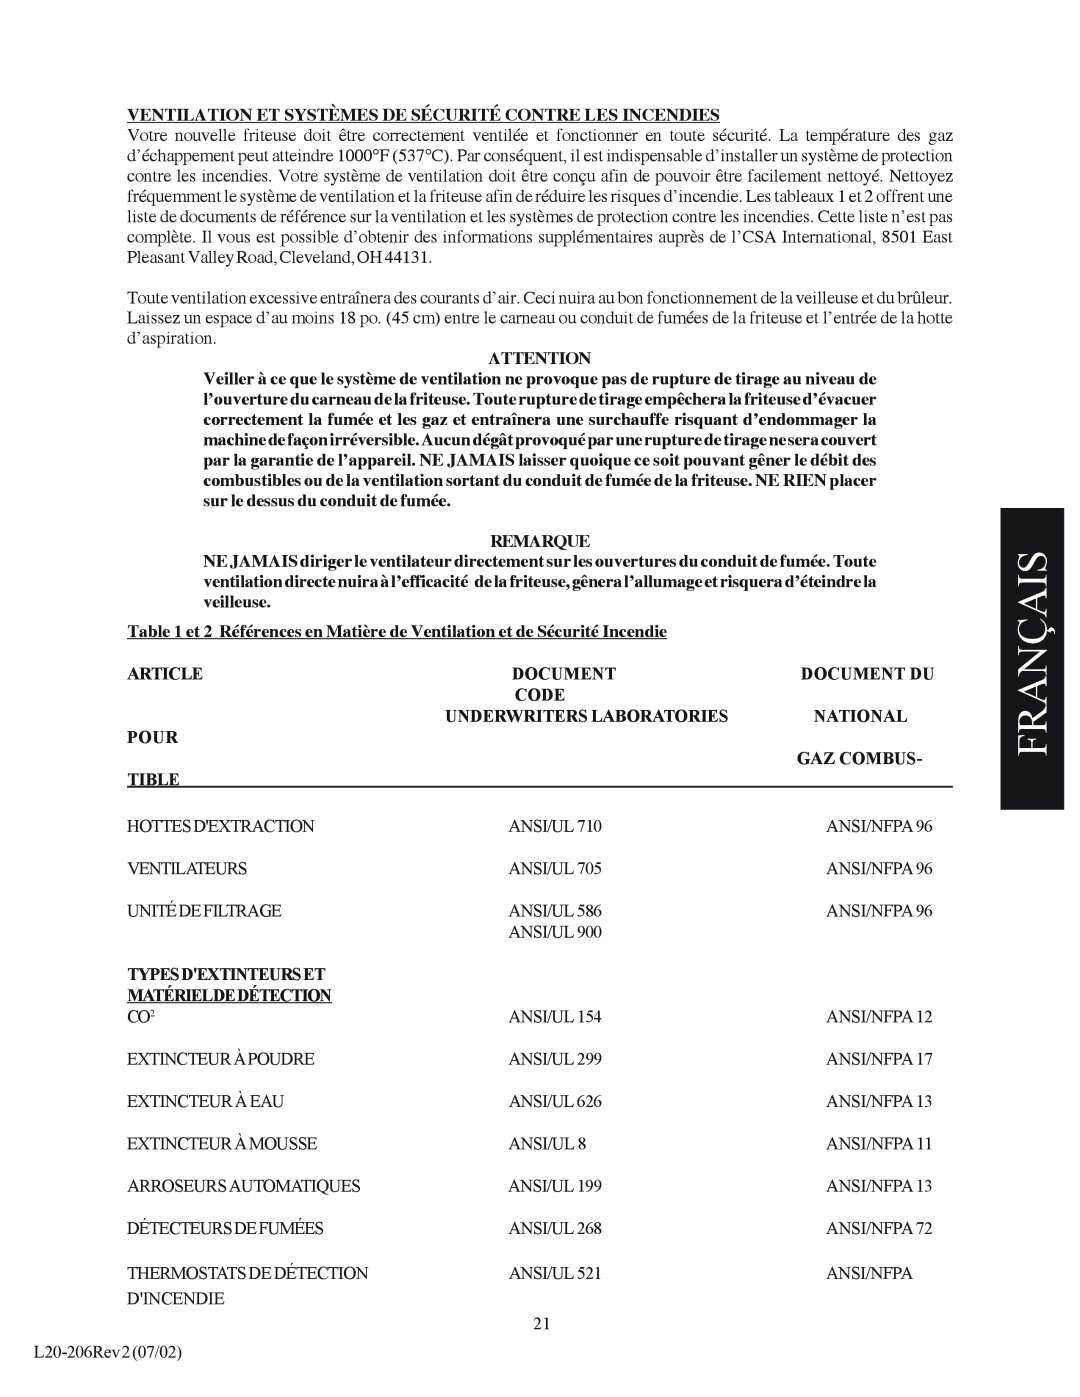 Pitco Frialator SG Français, Ventilation Et Systèmes De Sécurité Contre Les Incendies, Remarque, Article, Document, Code 